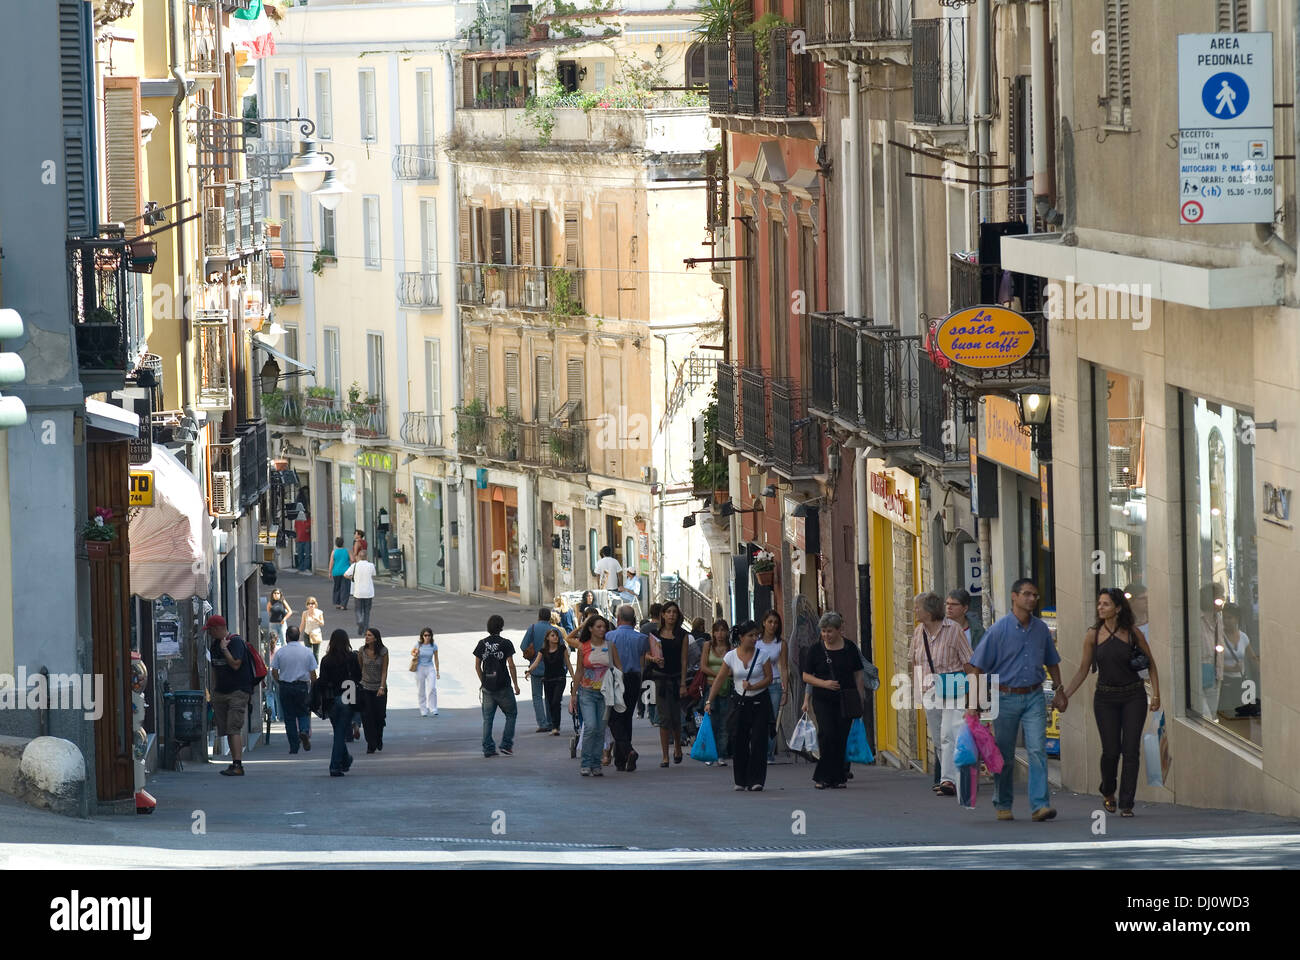 Una vista de la calle de la vieja zona turística de Cagliari, capital de Cerdeña Foto de stock